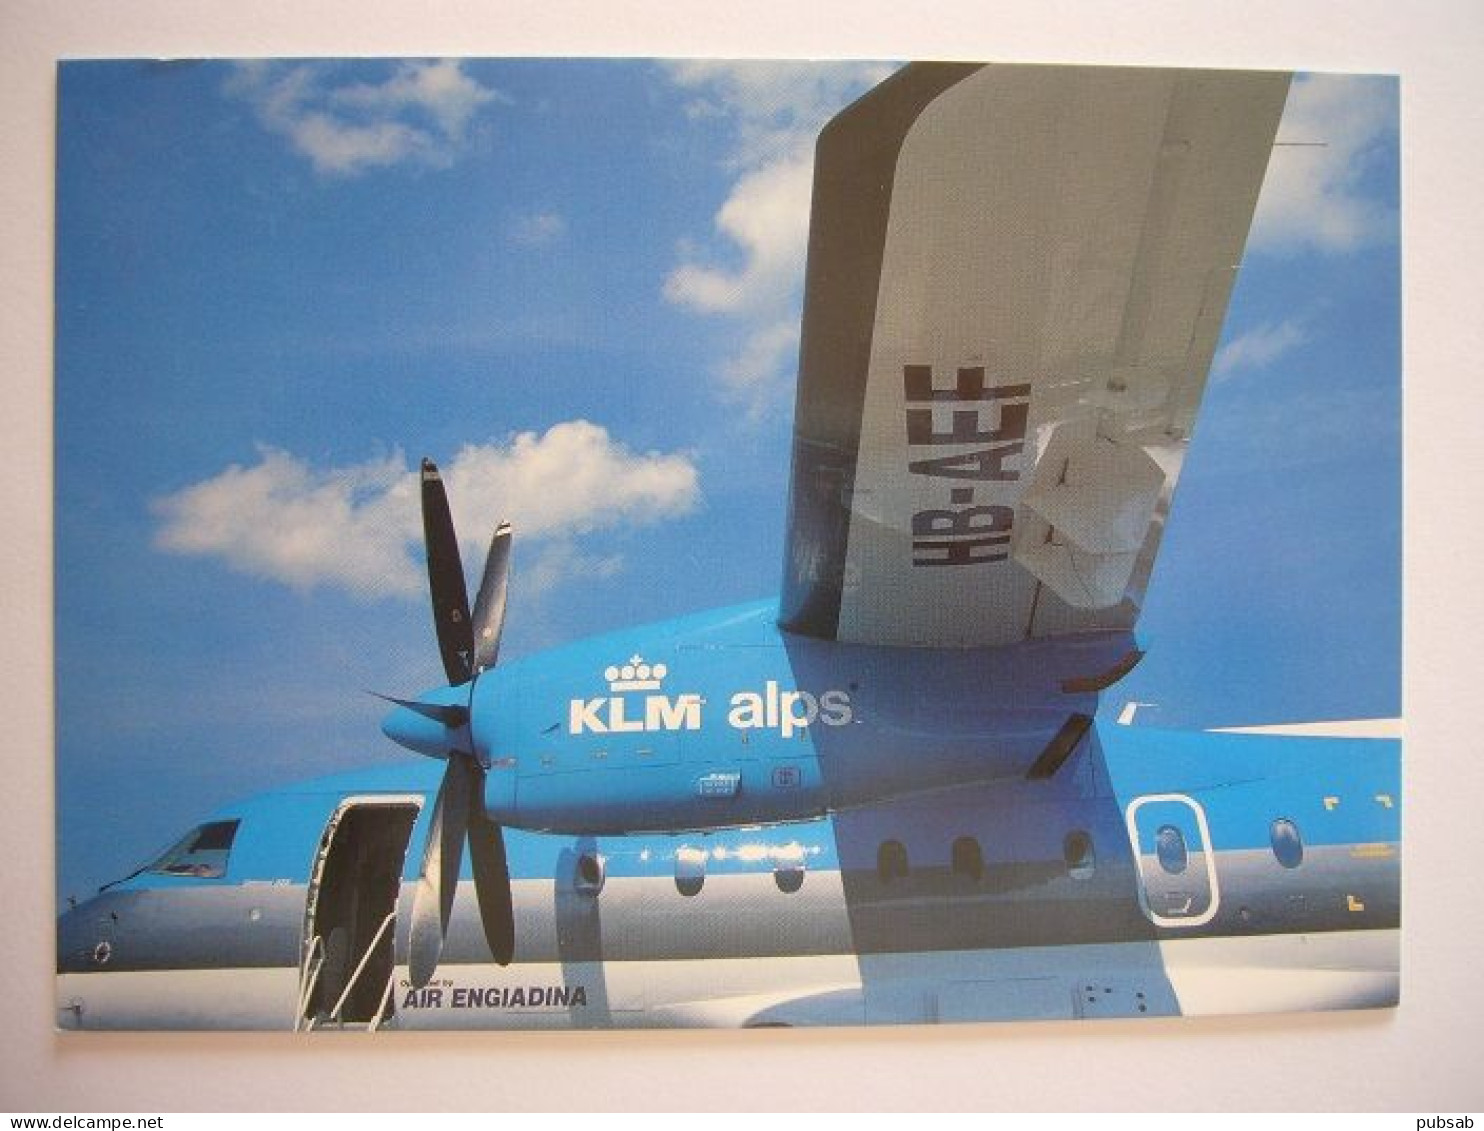 Avion / Airplane / KLM - AIRENGIADINA / Dornier 328-110 / Airline Issue - 1946-....: Modern Era